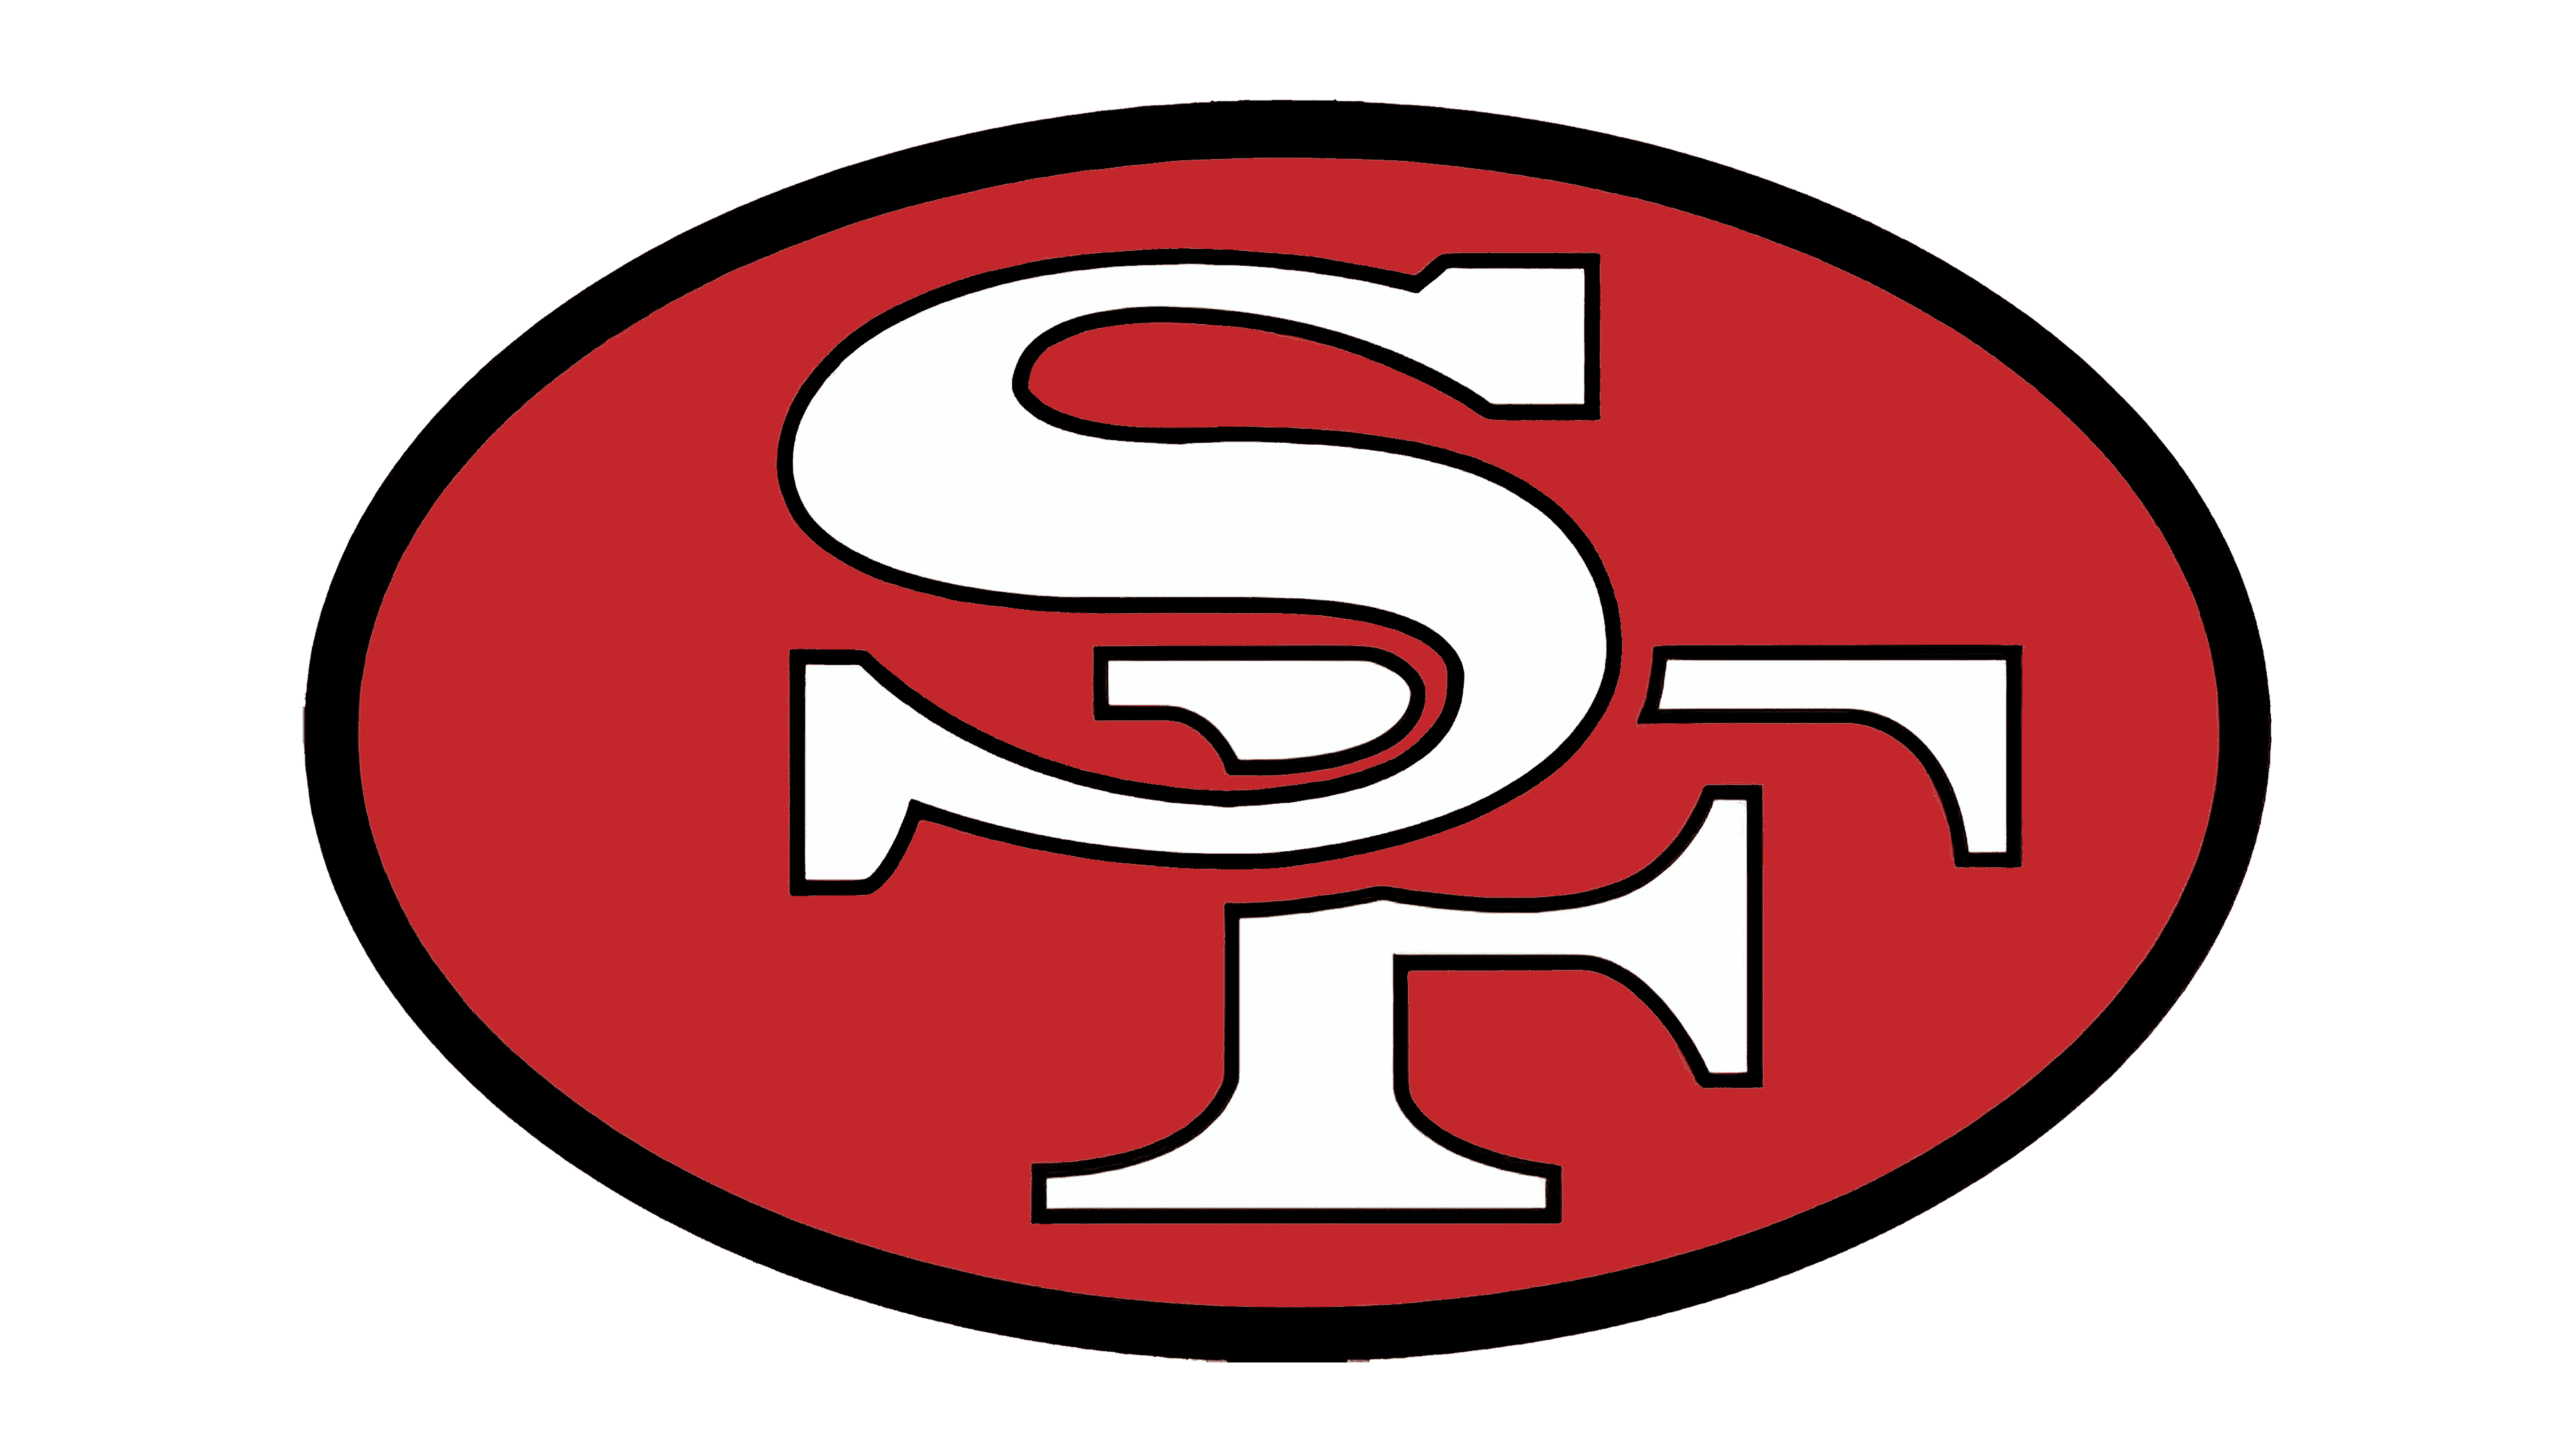 Logo và biểu tượng San Francisco 49ers, ý nghĩa, lịch sử, PNG, thương hiệu là những thông tin vô cùng quan trọng về đội bóng này. Đây không chỉ là biểu tượng của CLB, mà còn là biểu tượng của thành phố San Francisco và cả nước Mỹ. Hãy tìm hiểu thêm về ý nghĩa, lịch sử và thương hiệu của 49ers qua các hình ảnh và thông tin được chia sẻ.